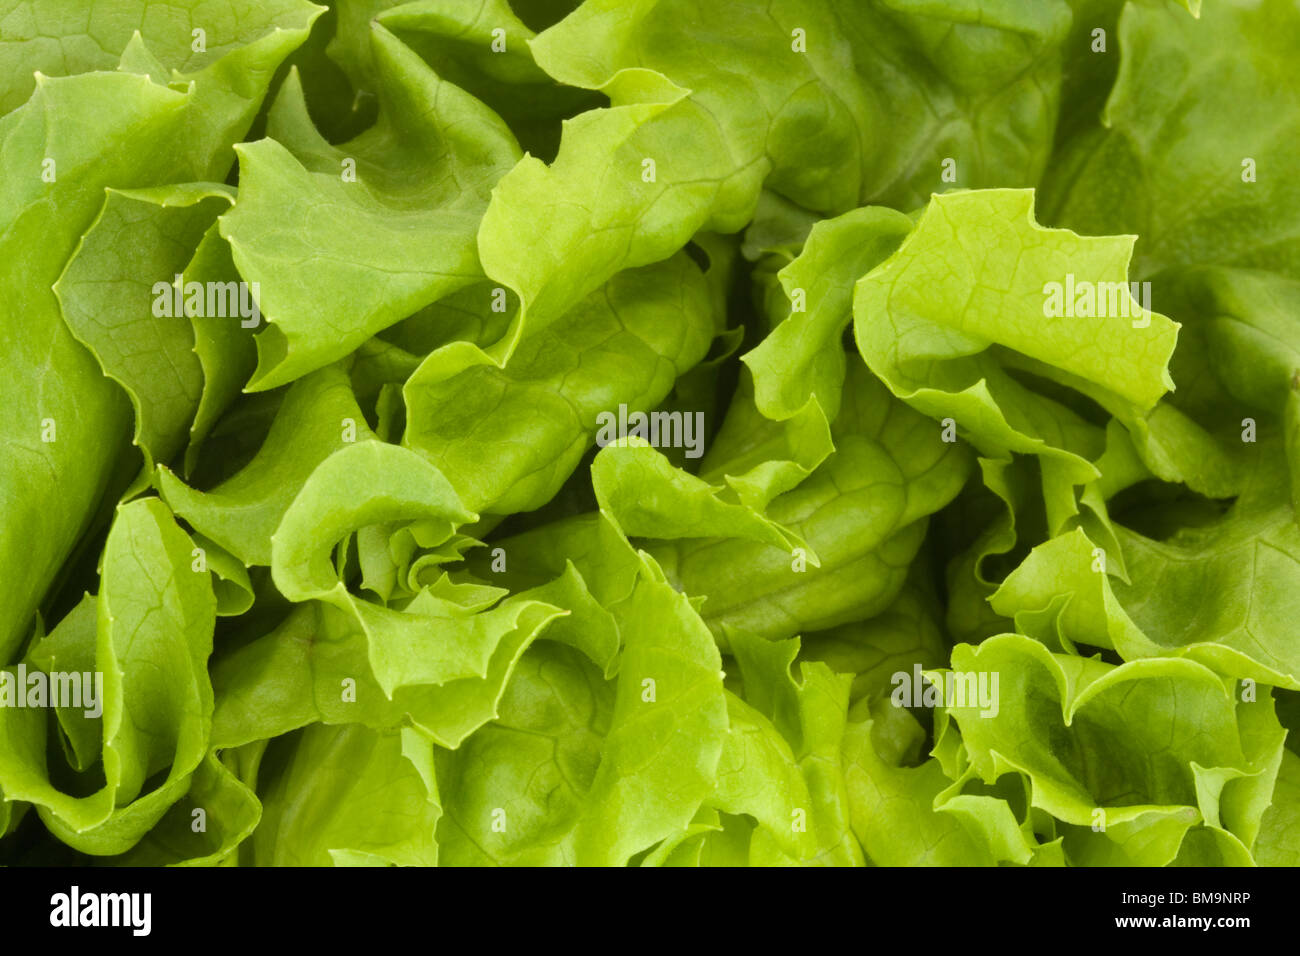 Cierre de un fondo de lechuga verde fresco Foto de stock